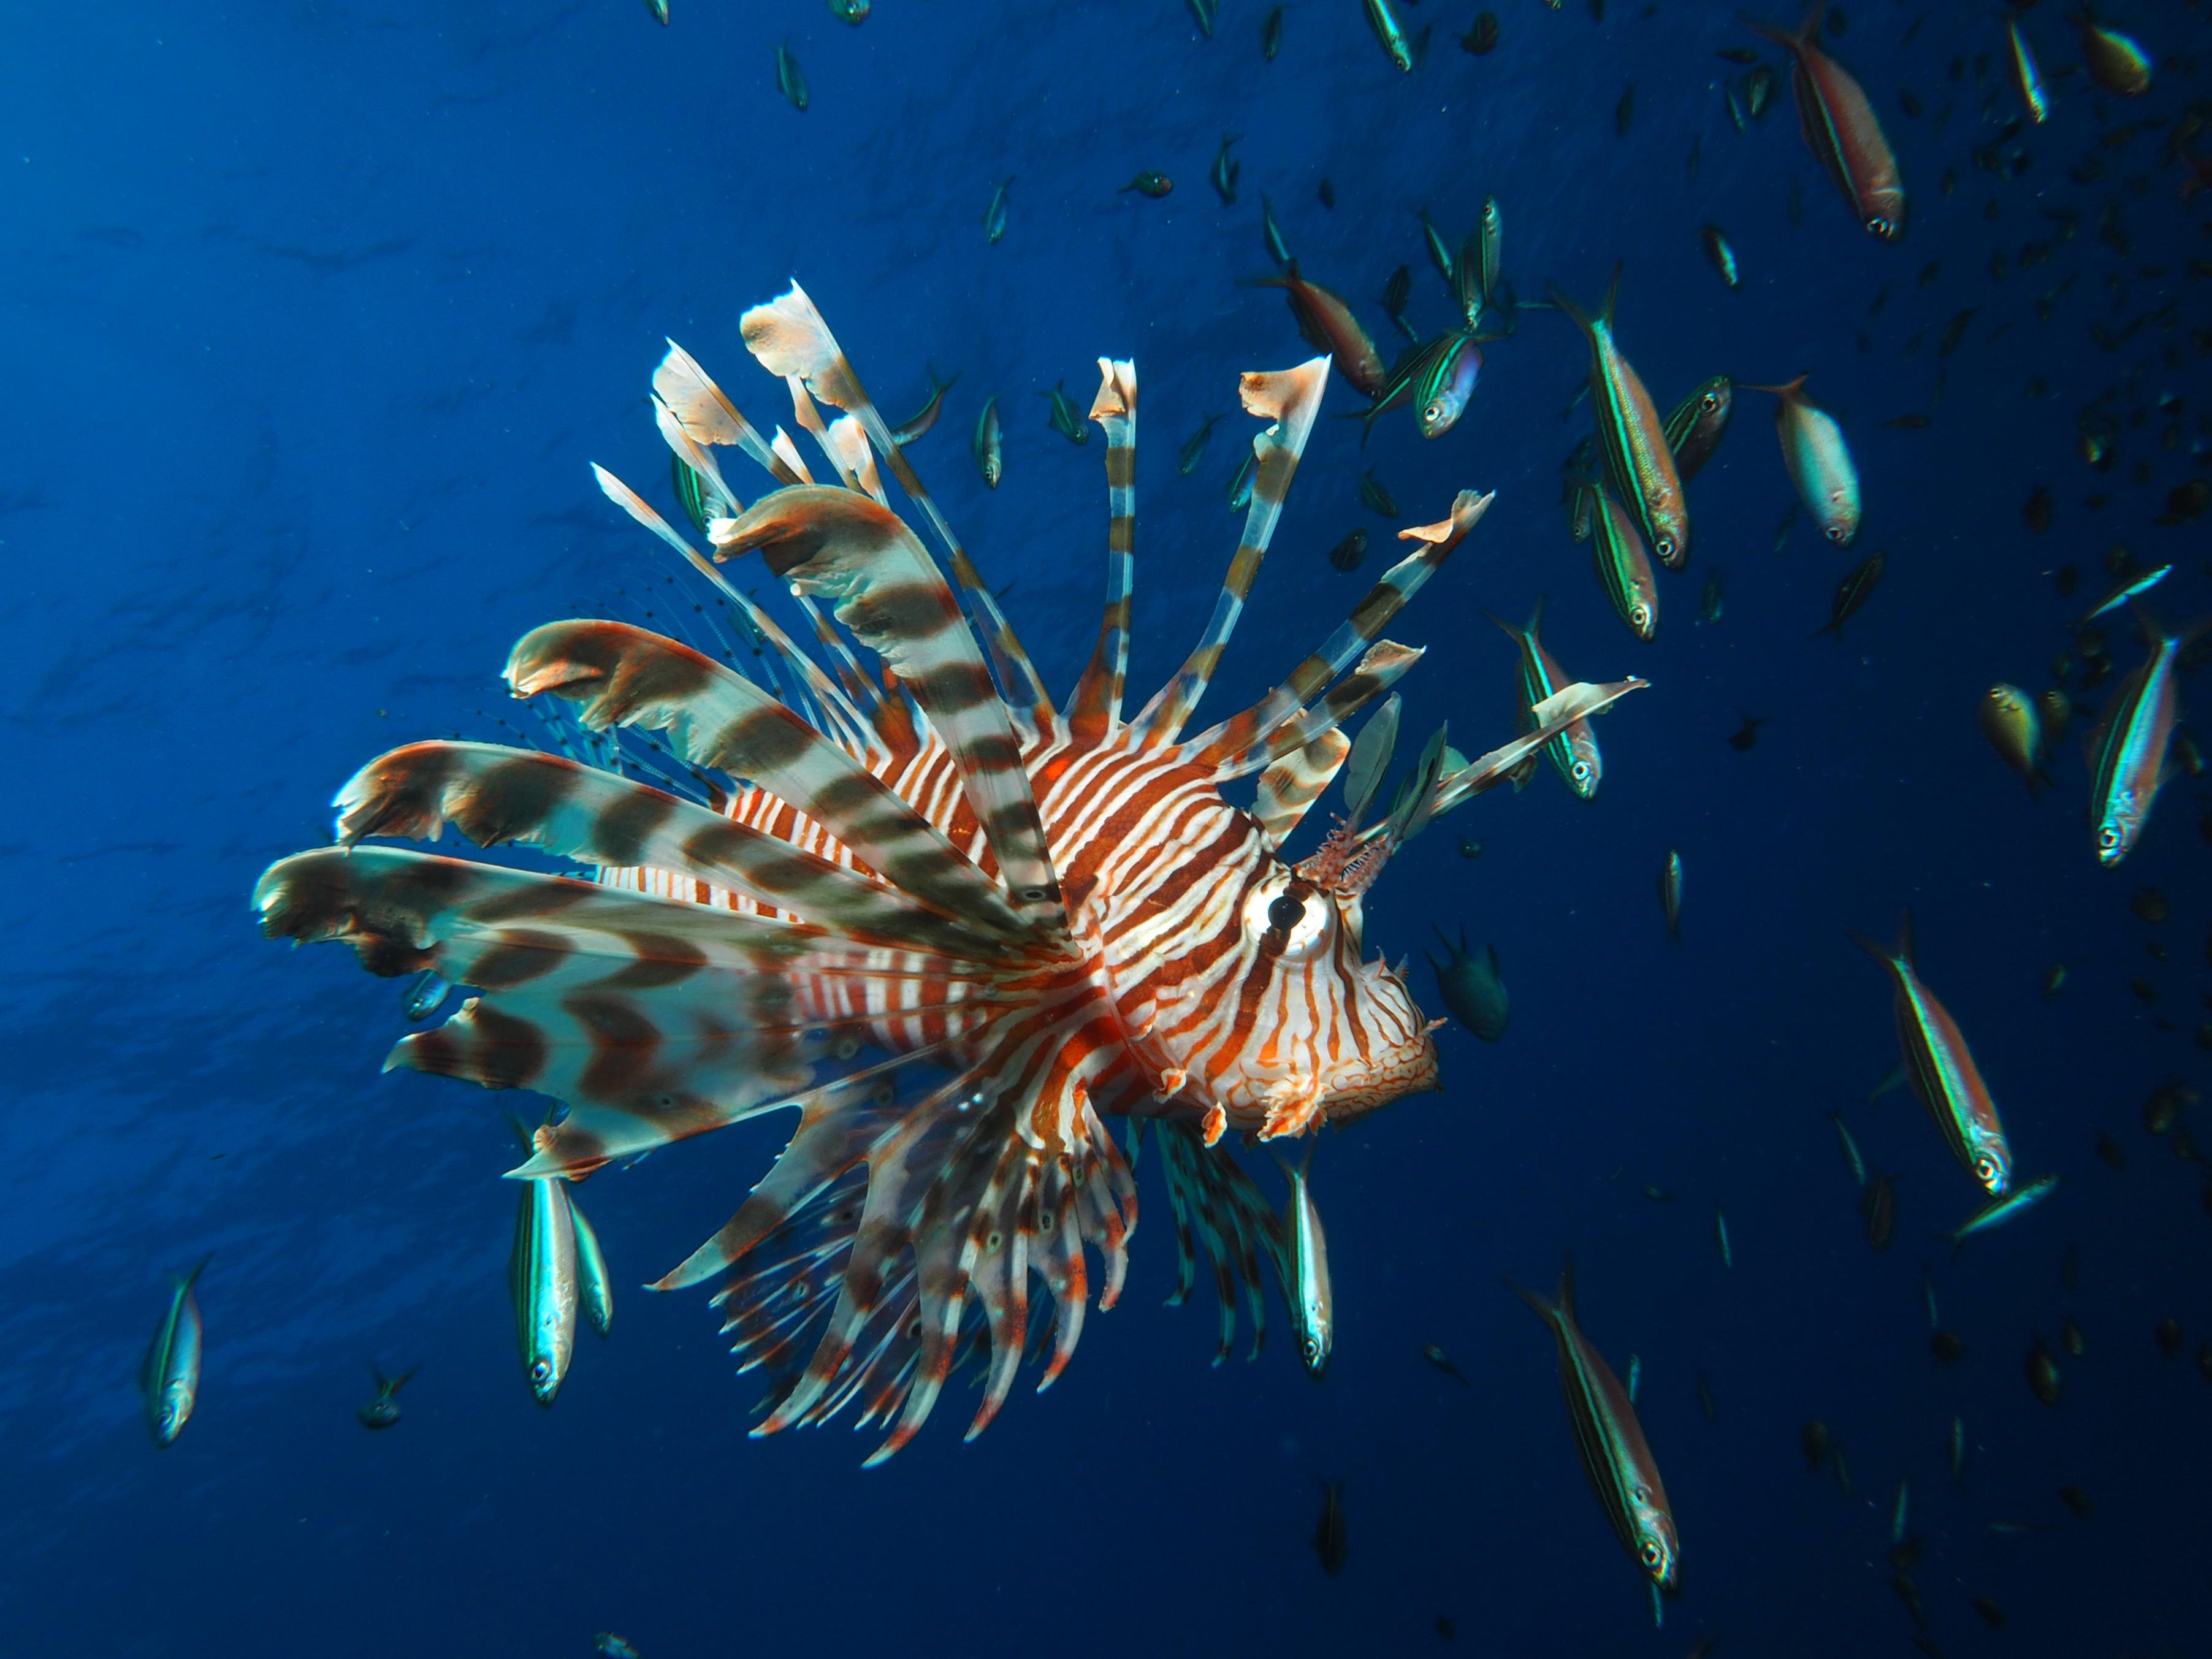 البحر الأحمر الدولية تكشف عن نتائج أضخم دراسة من نوعها على البيئة والحياة البحرية في ساحل البحر الأحمر